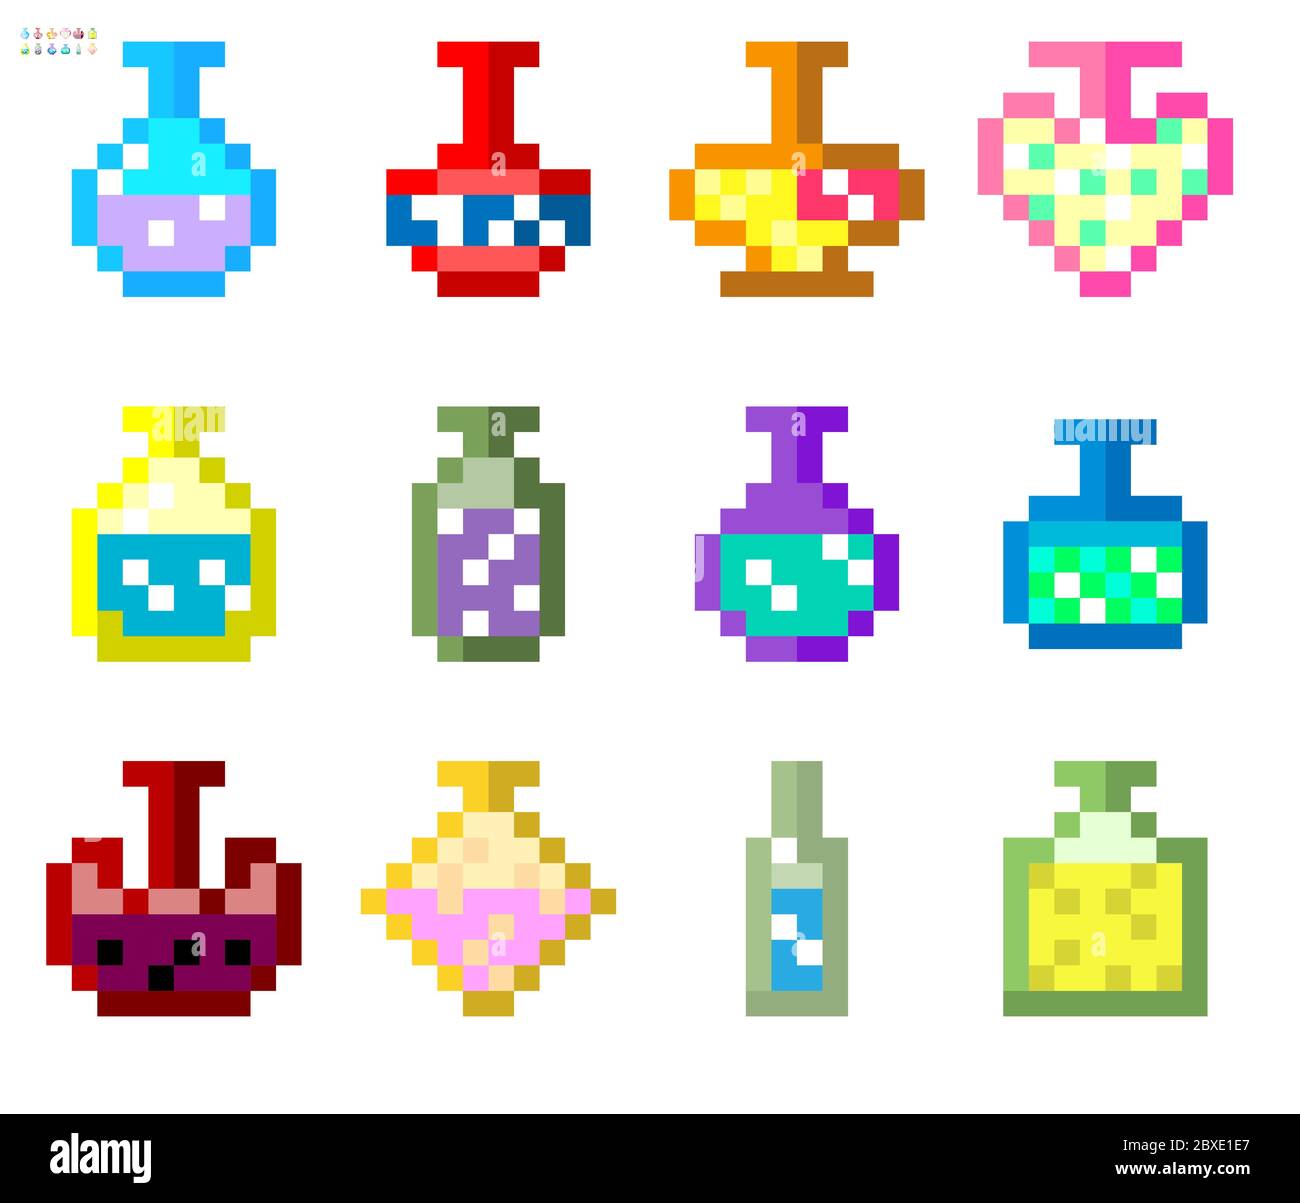 Indie-Stil Satz von Tränken in einem 8-Bit-Indie Arcade-Spiel. Pixel-Kunst, Flaschen mit Tränken in verschiedenen Farben und Füllungen .. Stock Vektor